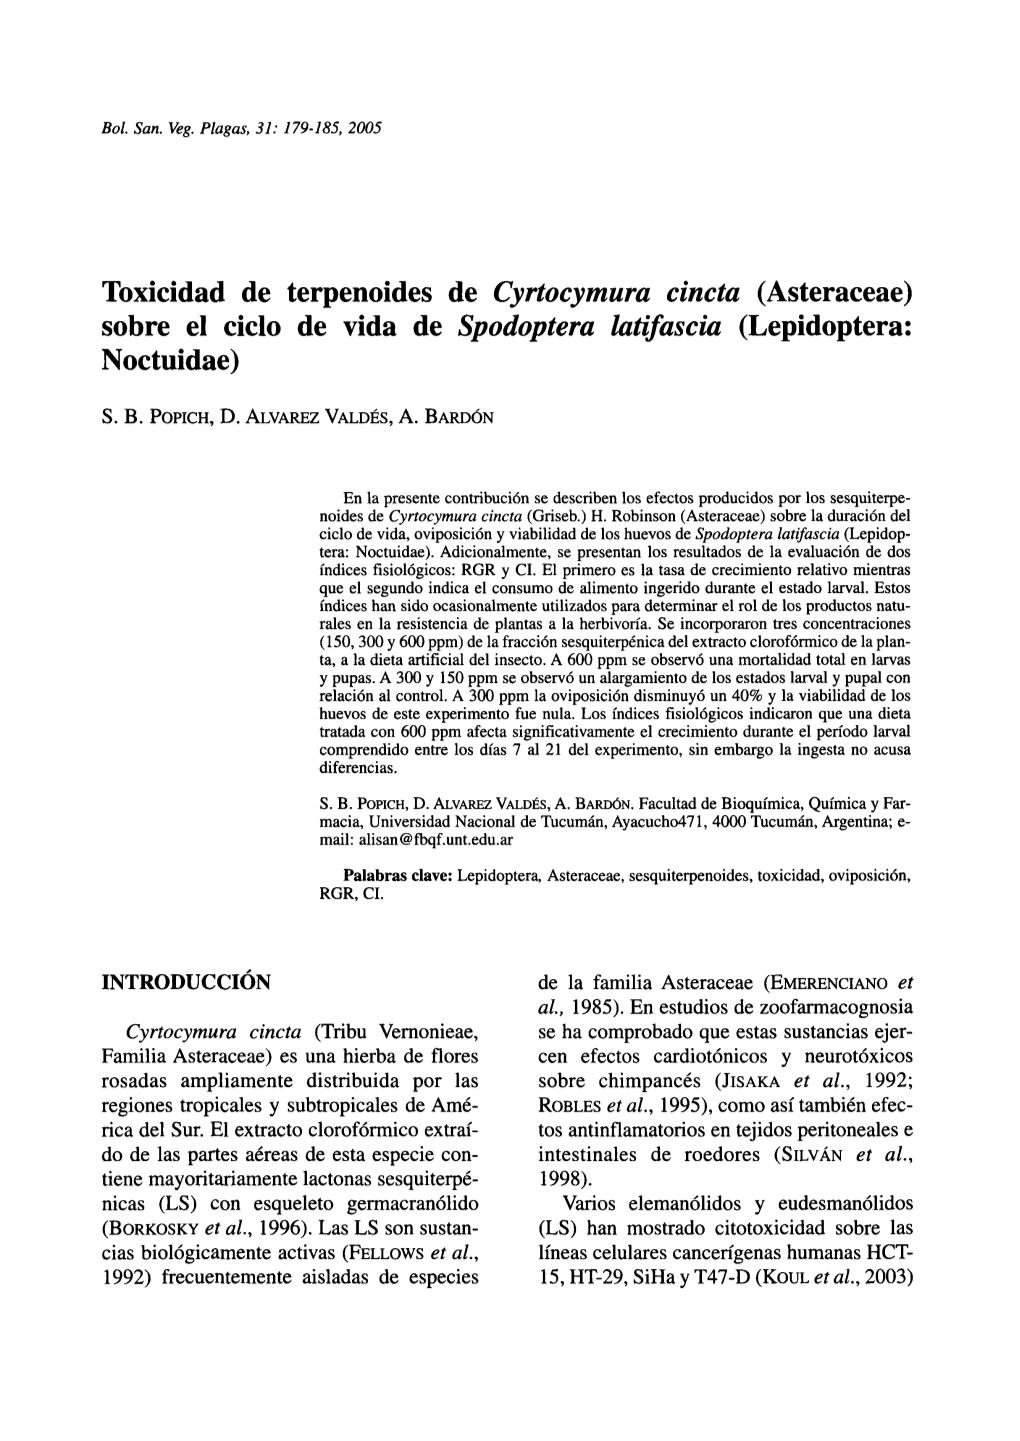 Toxicidad De Terpenoides De Cyrtocymura Cincta (Asteraceae) Sobre El Ciclo De Vida De Spodoptera Latifascia (Lepidoptera: Noctuidae)